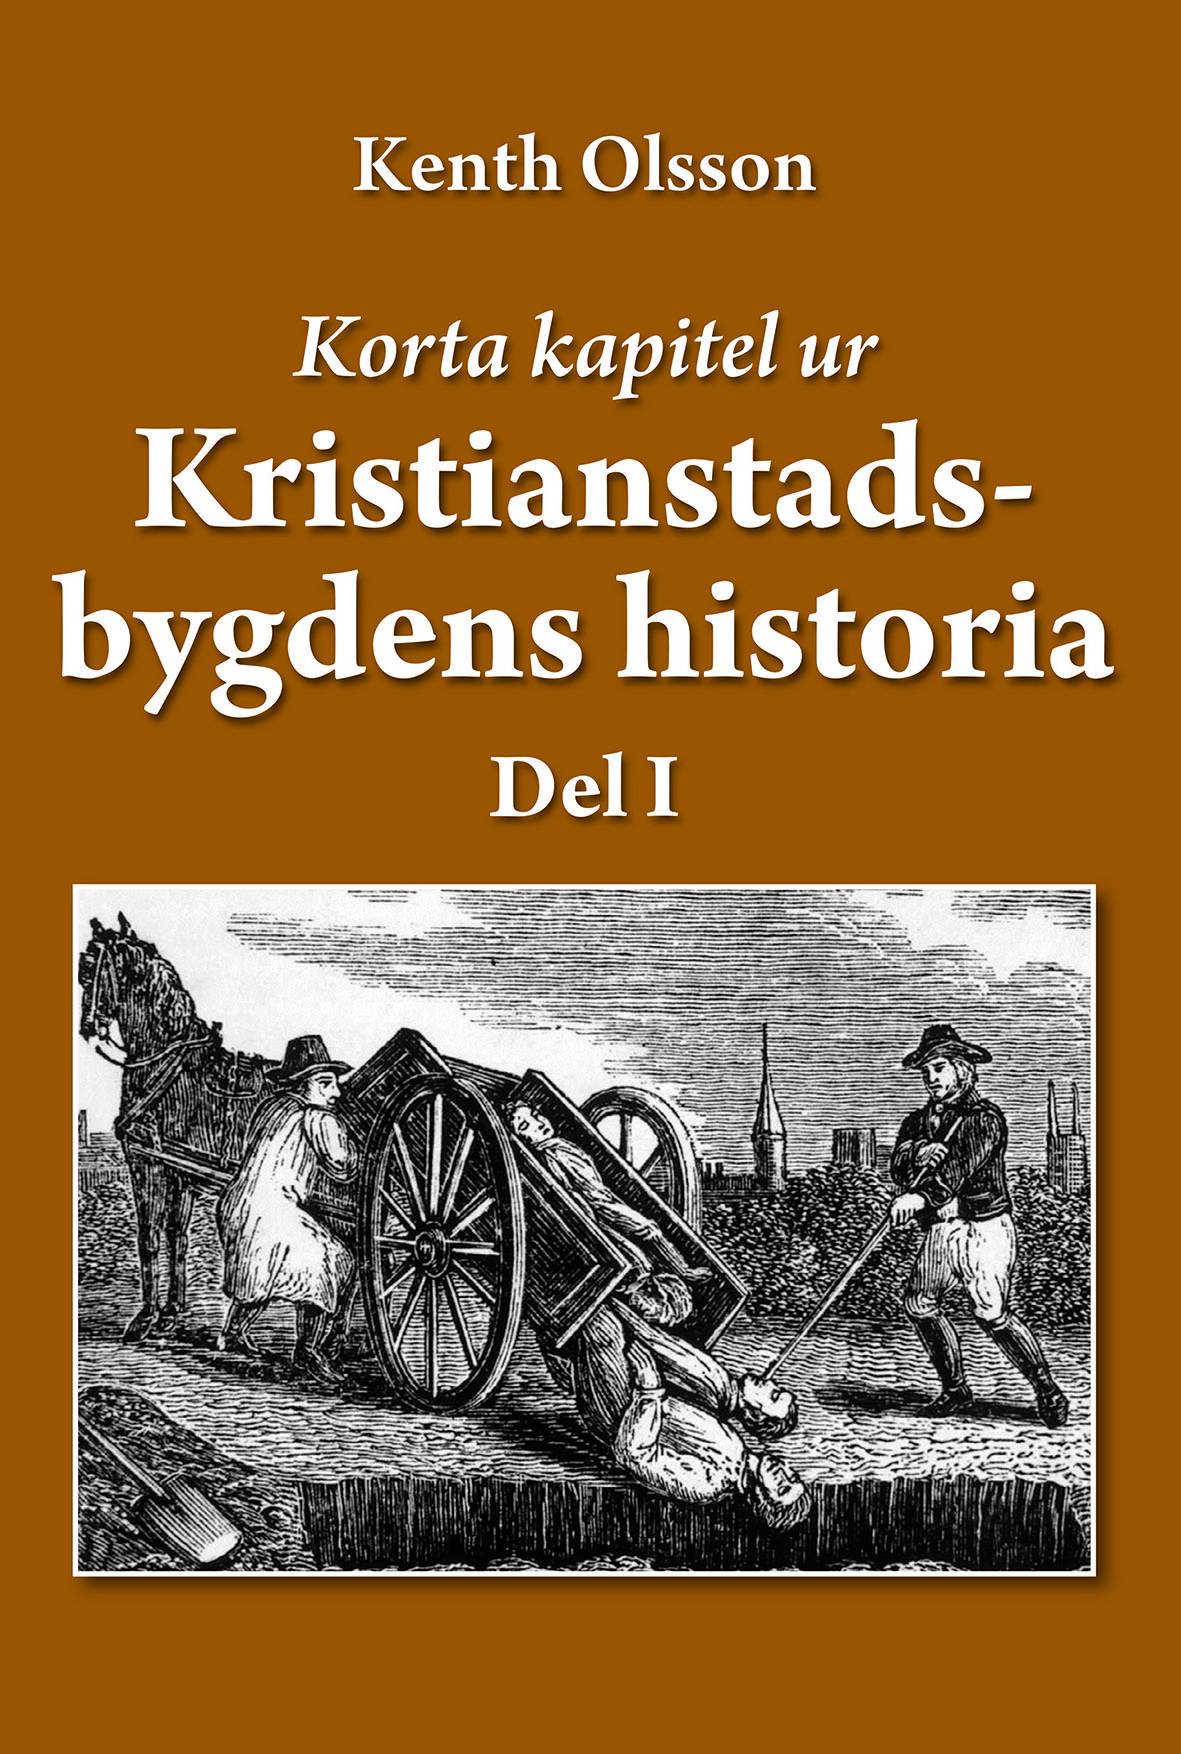 Korta kapitel ur Kristianstadsbygdens historia